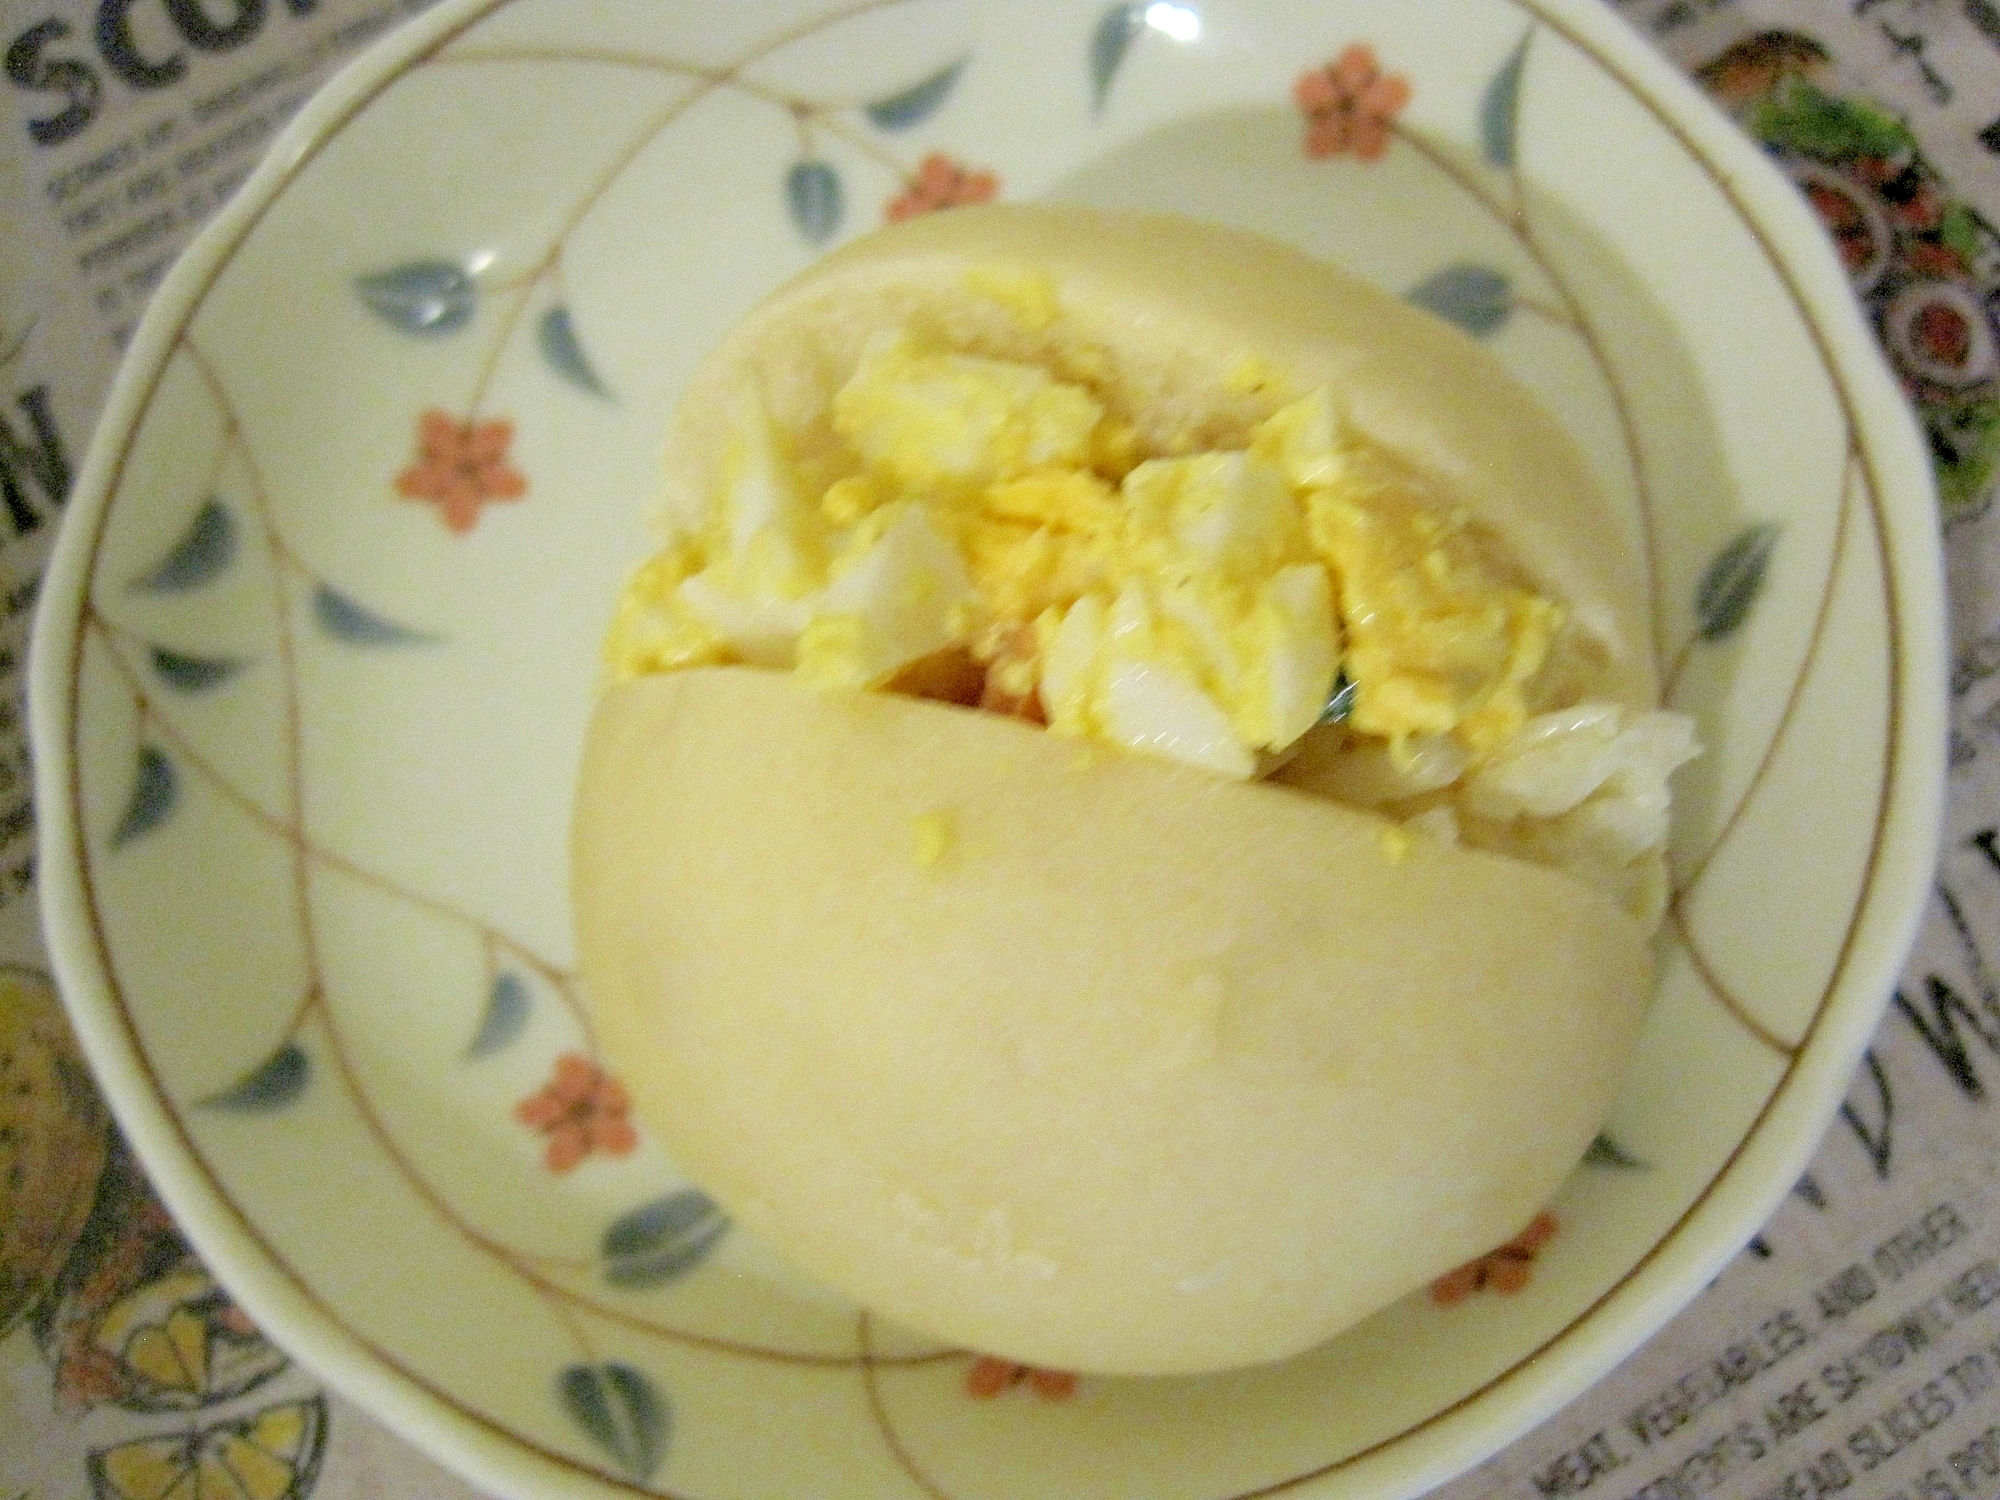 春キャベツの卵ロールサンドイッチ